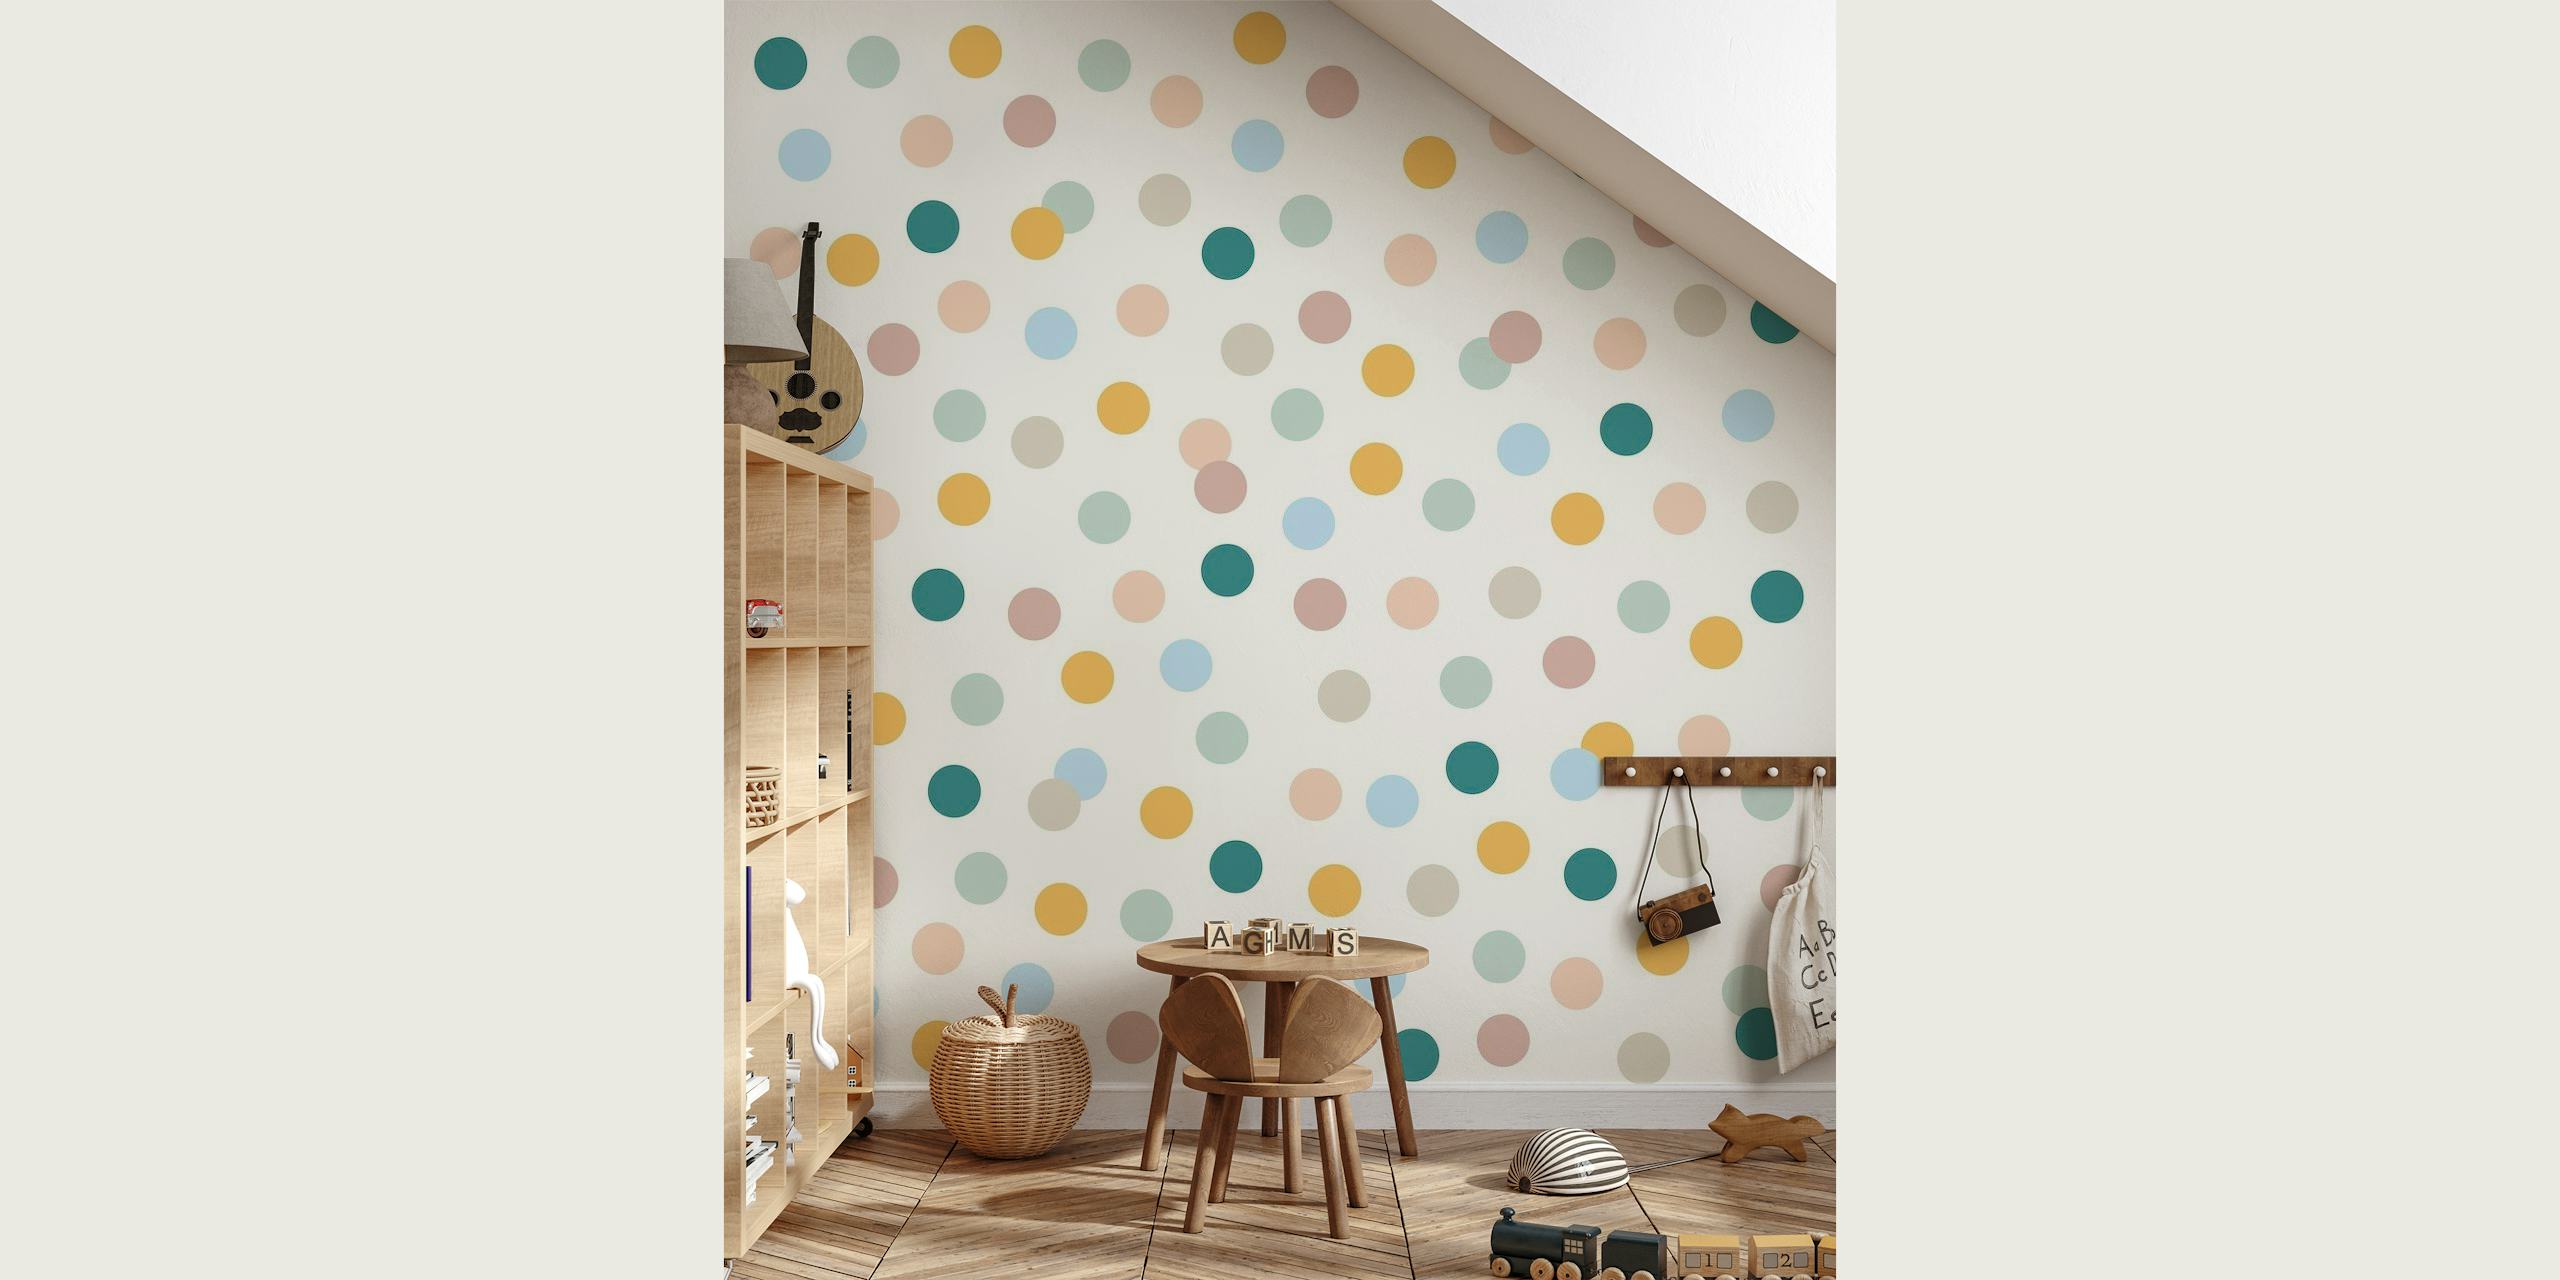 Colorful Polka Dots papel pintado